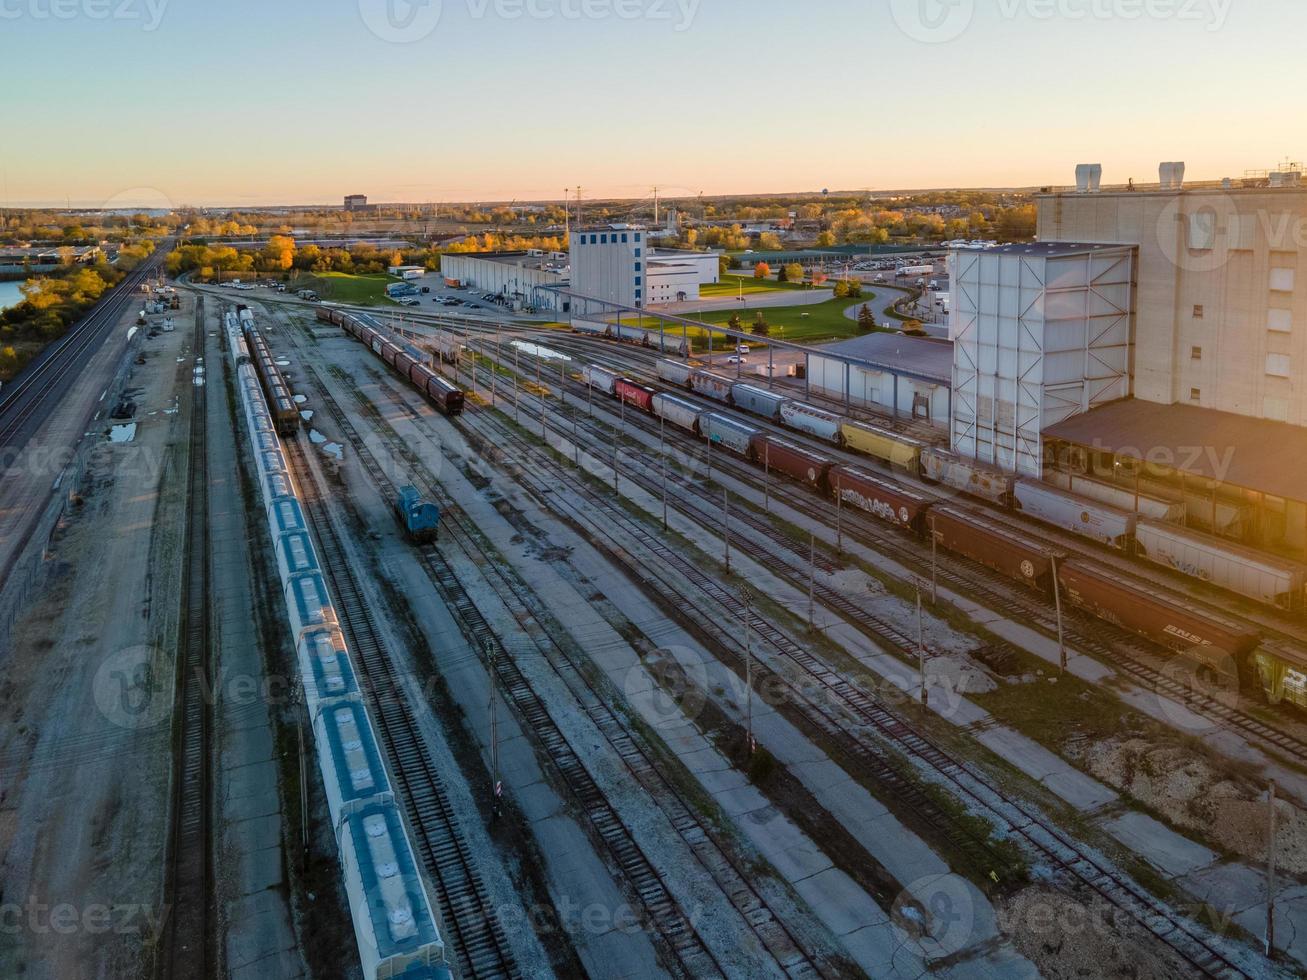 vue aérienne de la gare de triage et des bâtiments urbains au coucher du soleil photo